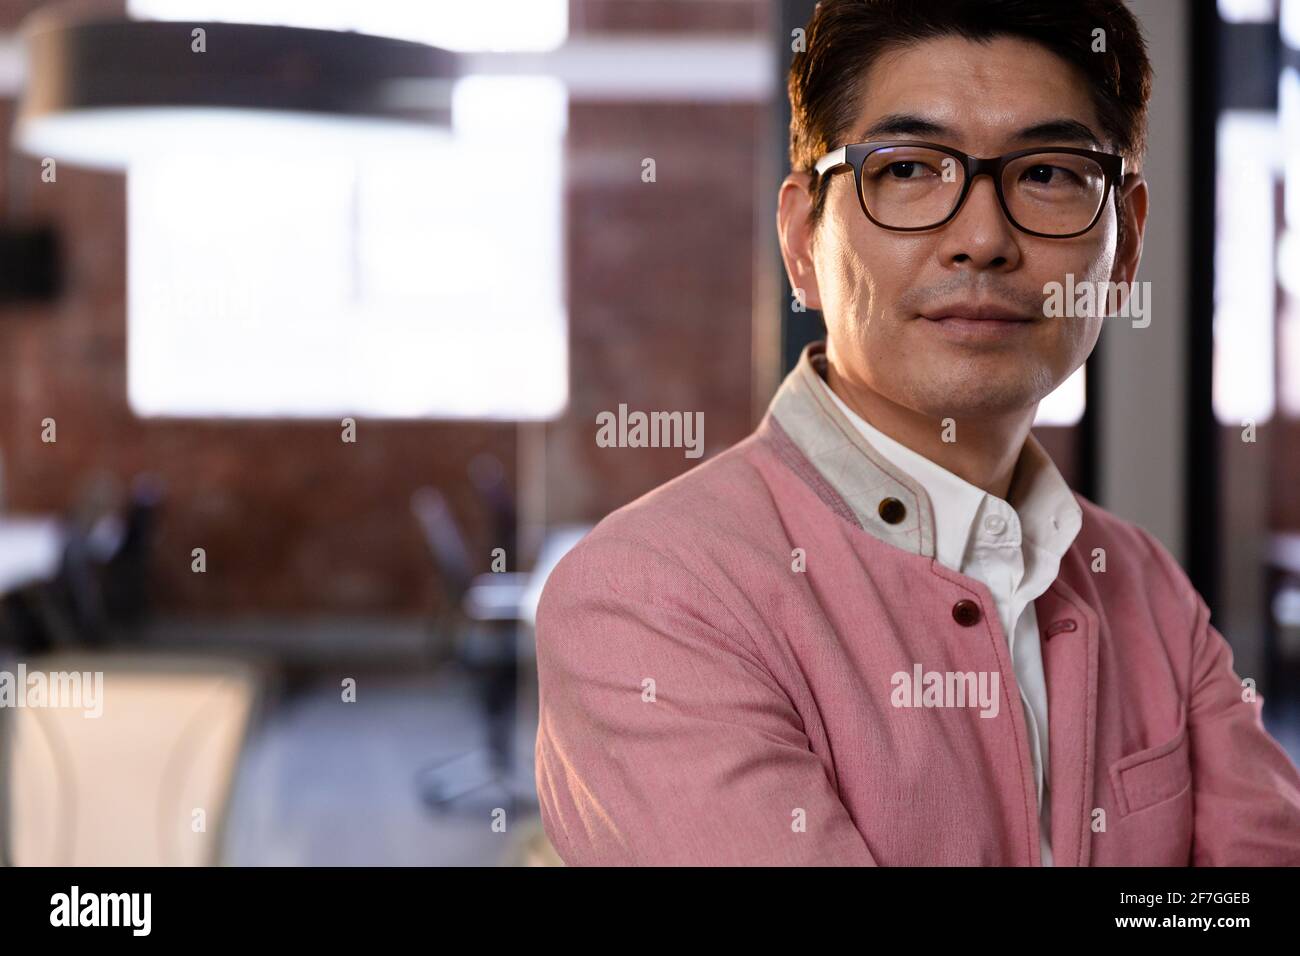 Retrato de un elegante hombre de negocios asiático mirando hacia el lado derecho Foto de stock